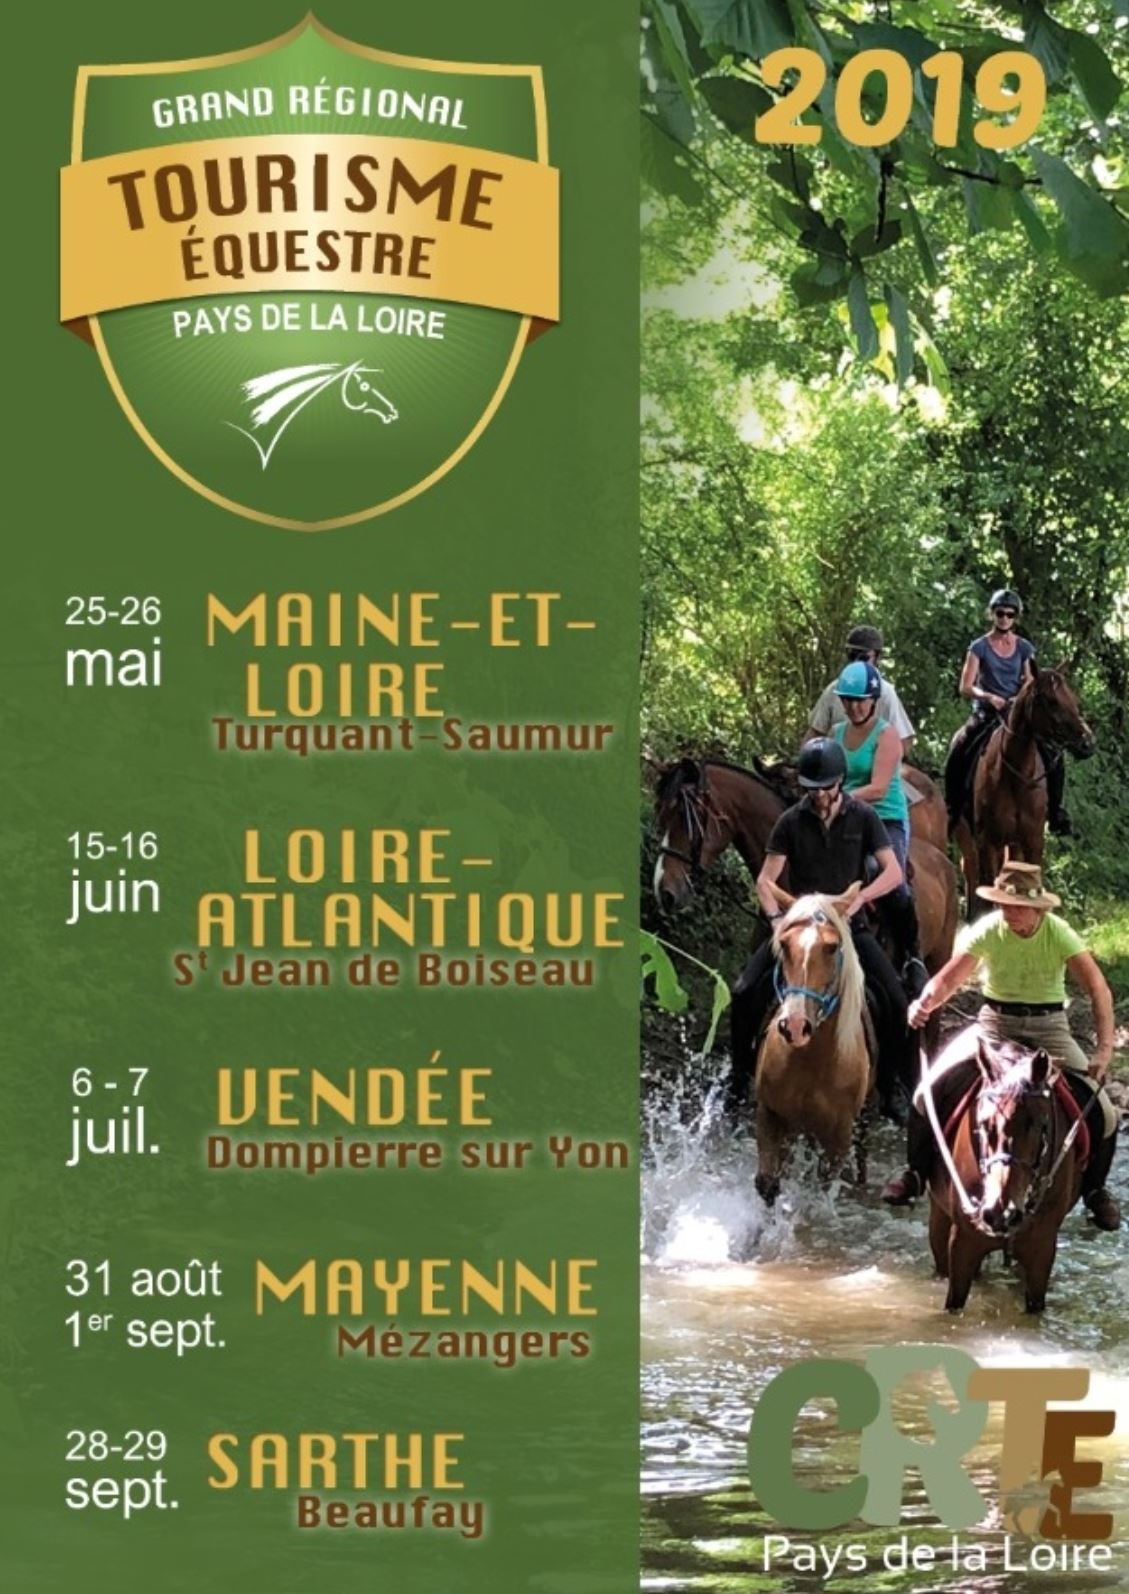 Lancement du Grand Régional de Tourisme Equestre à Turquant - Saumur